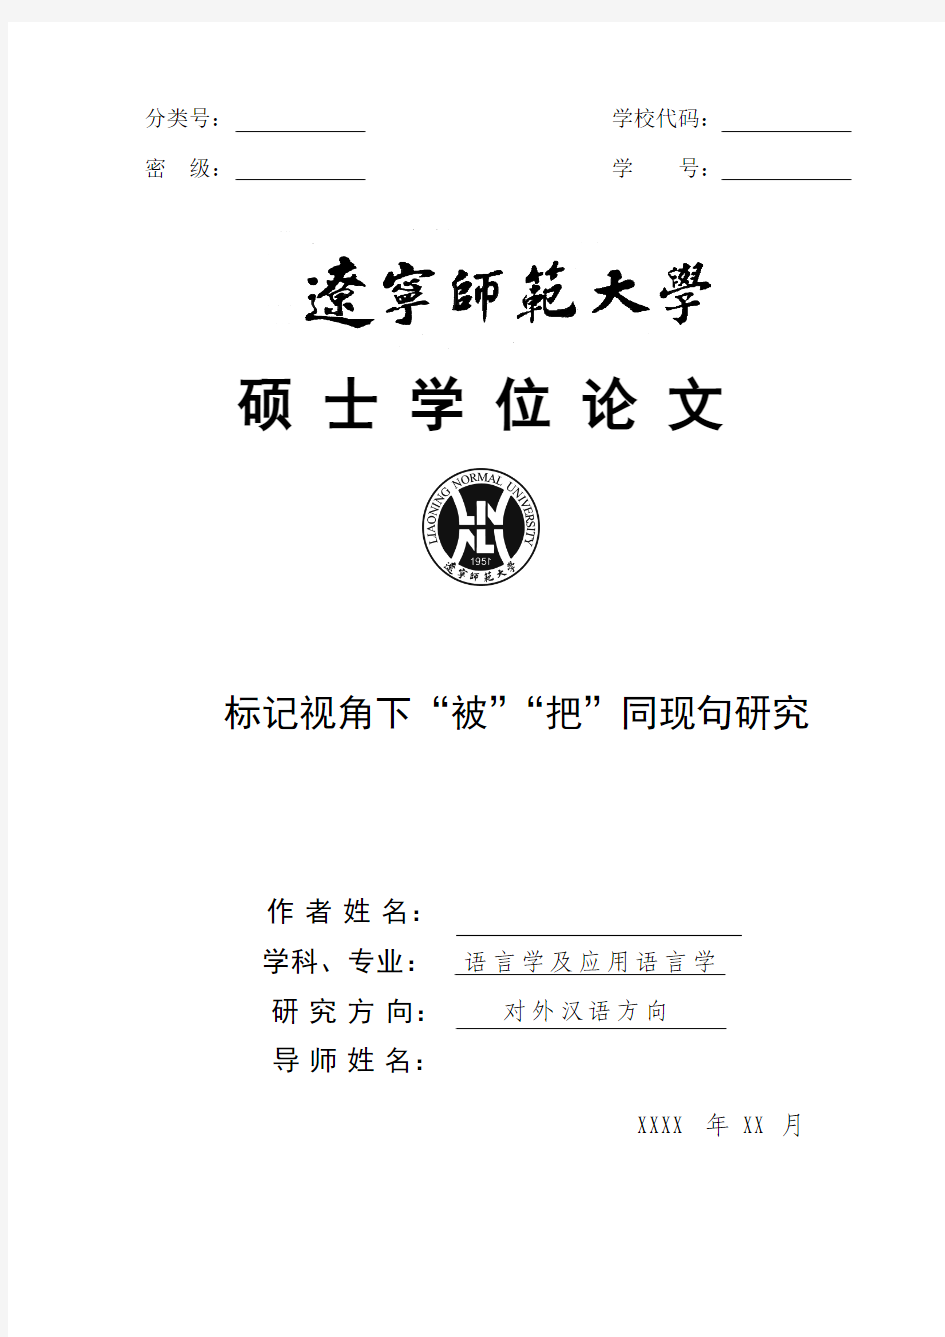 英语为母语的留学生习得汉语比较句偏误分析及对策(修改1(1)